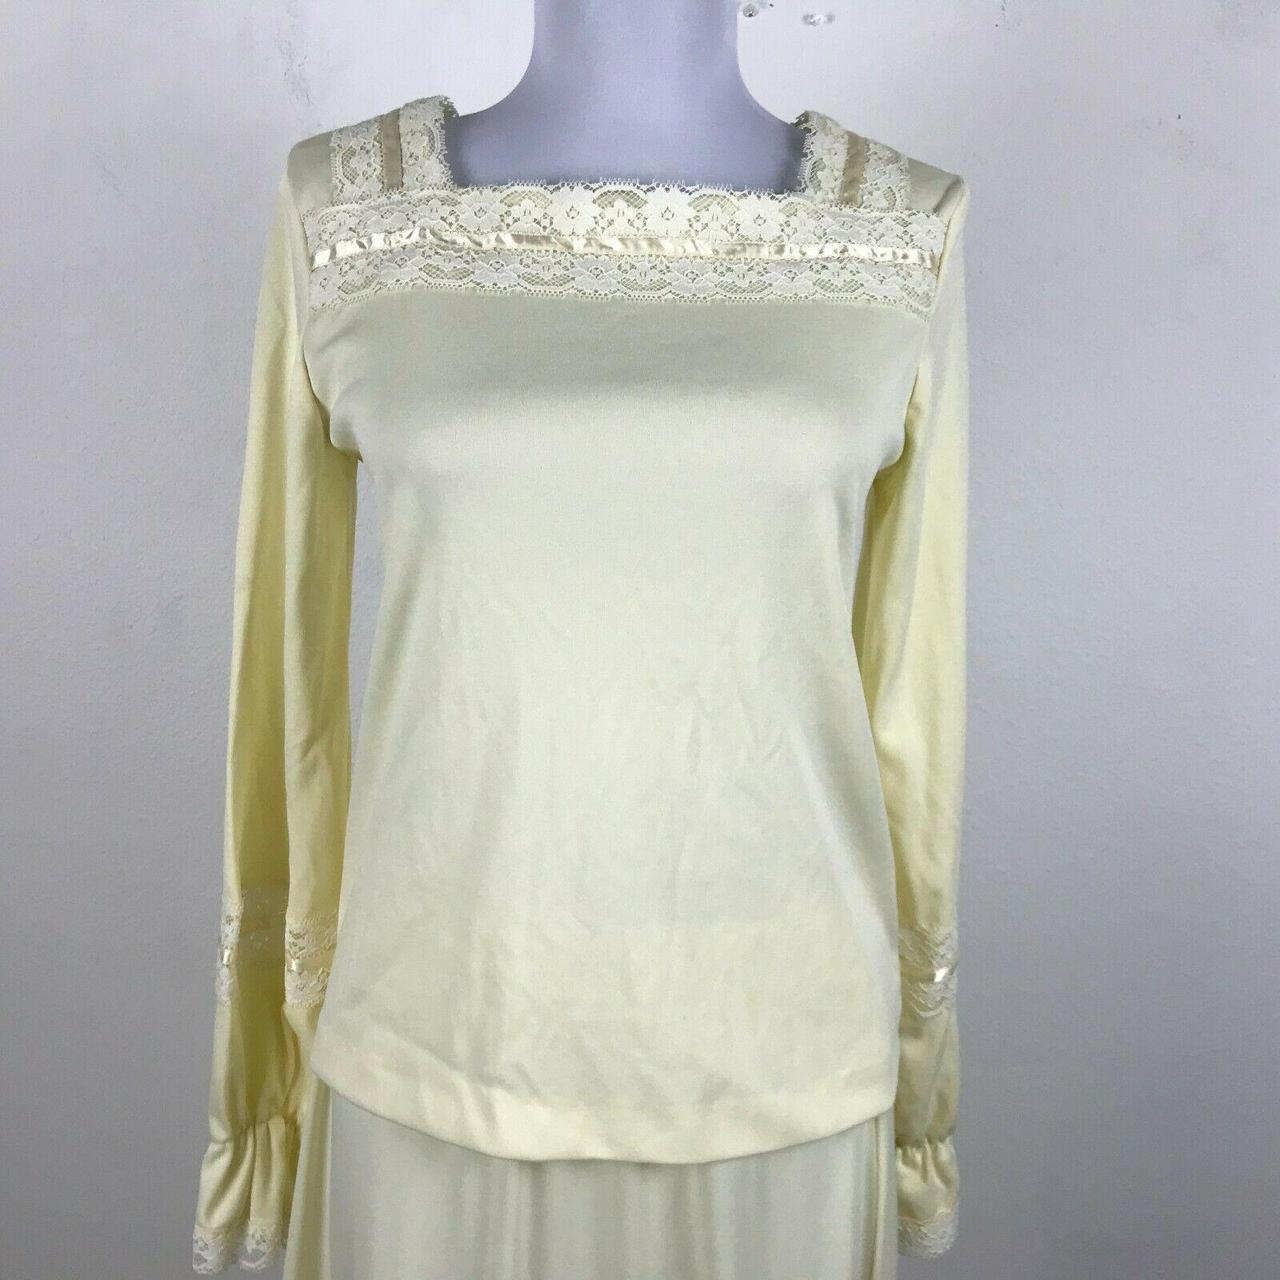 Product Image 2 - Vintage 1970s Prairie Suit Dress